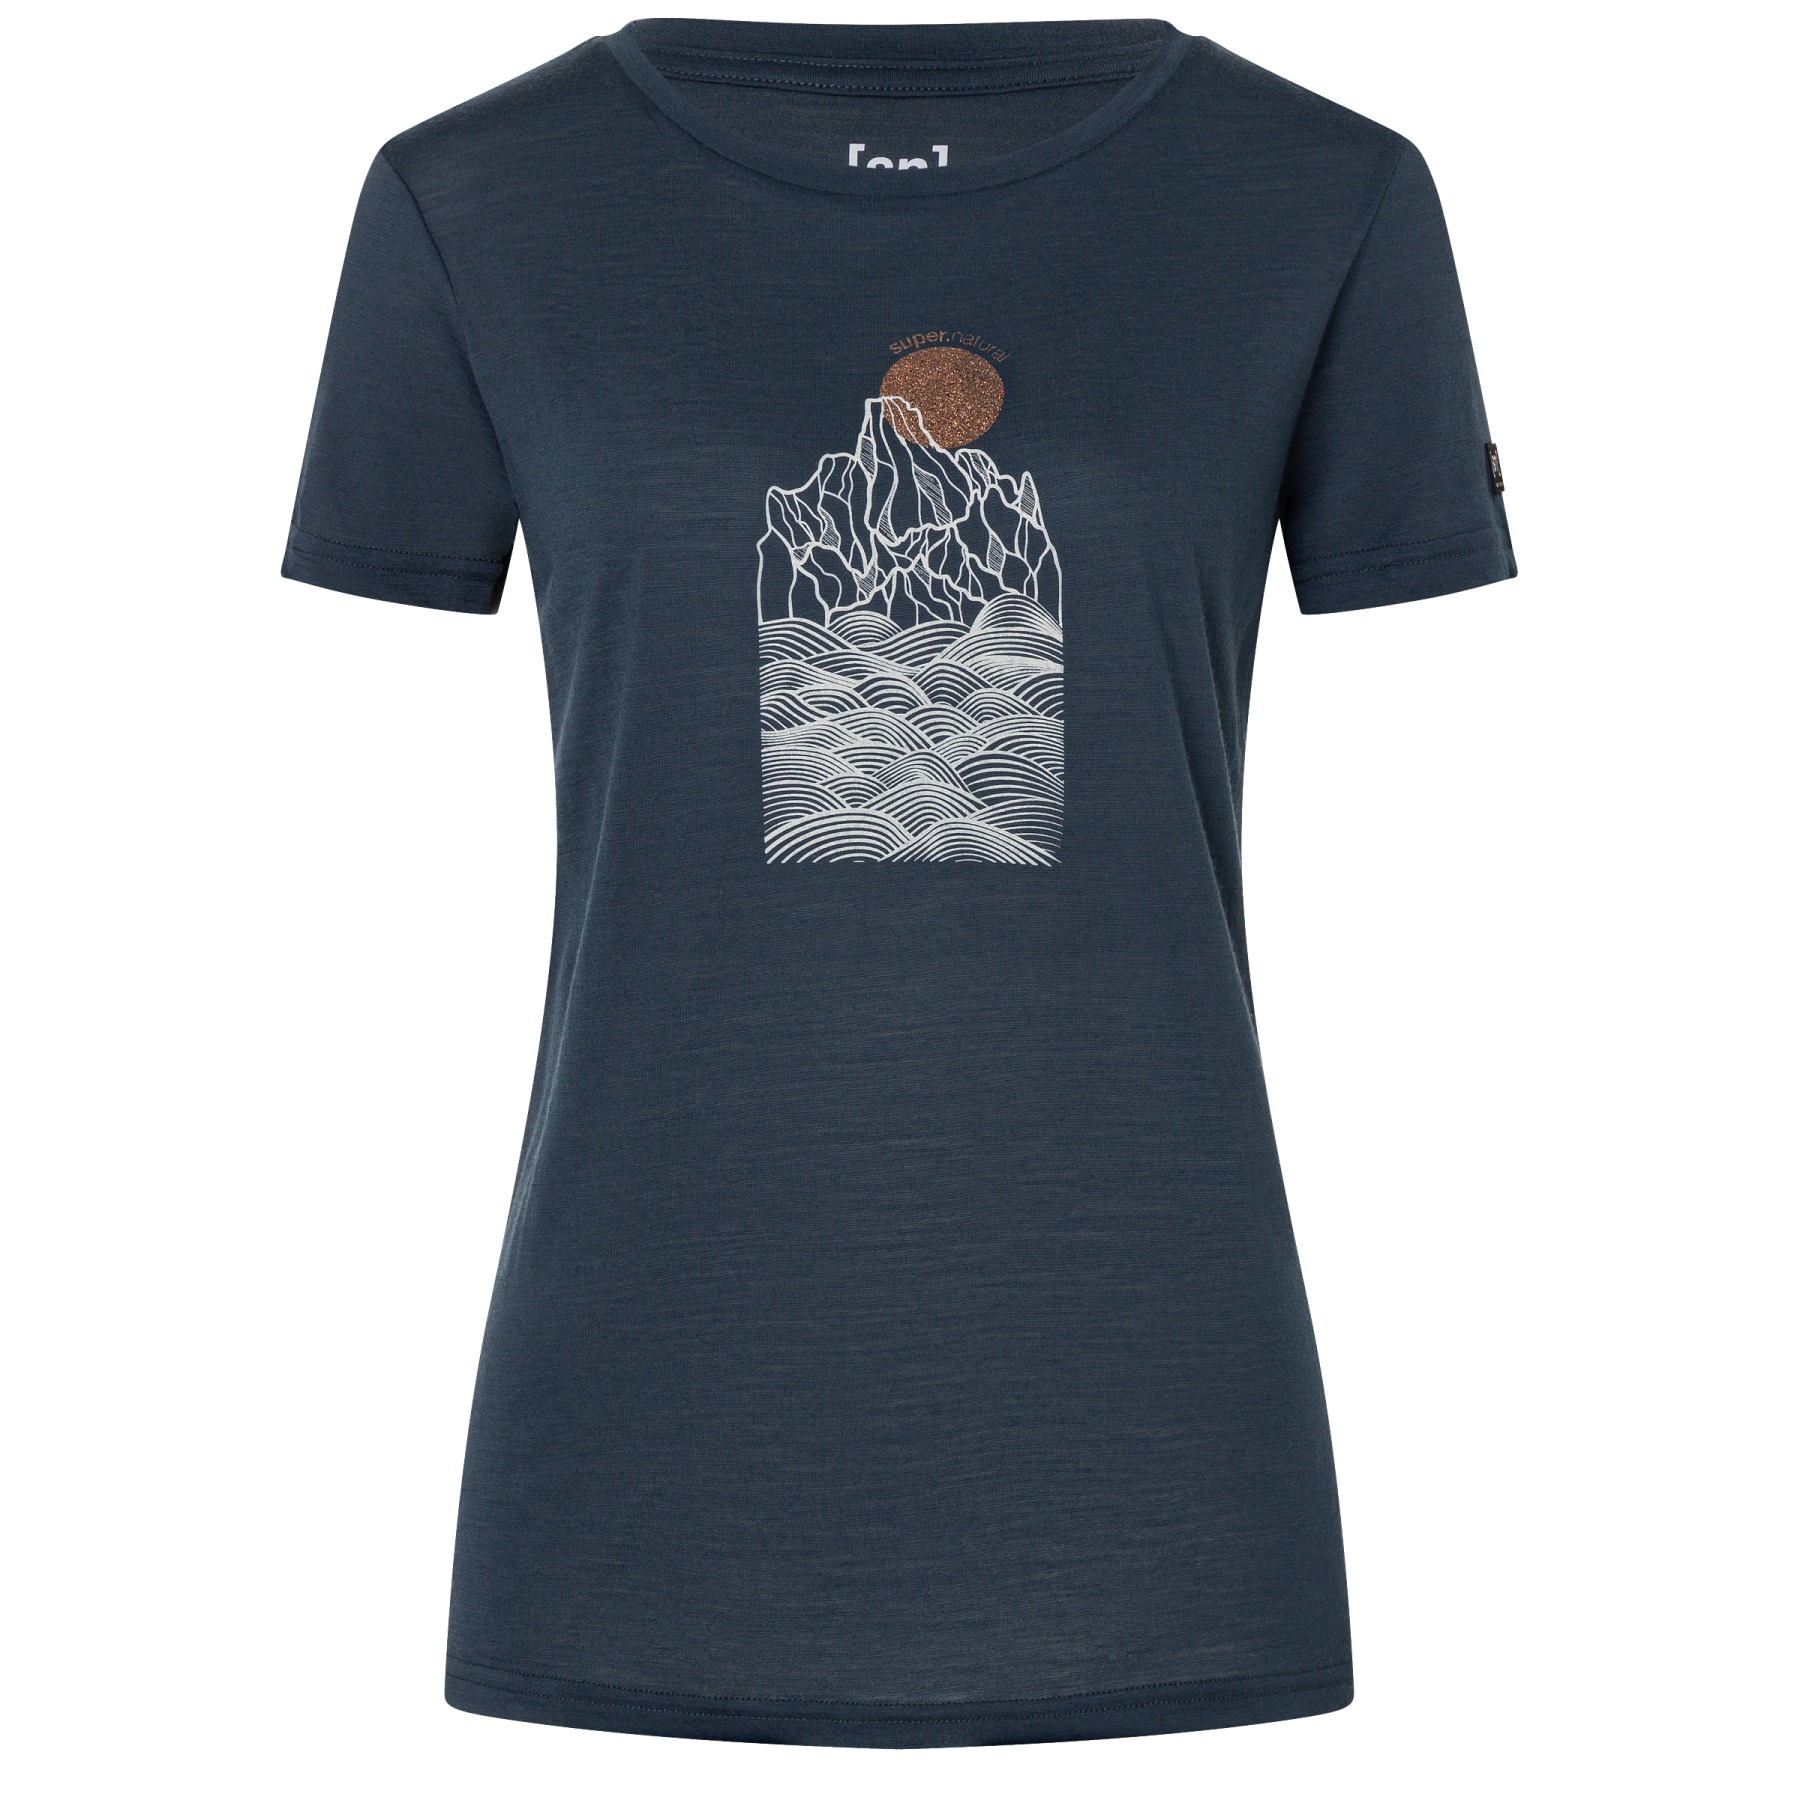 Produktbild von SUPER.NATURAL Preikestolen Cliffs T-Shirt Damen - Blueberry/Feather Grey/Copper